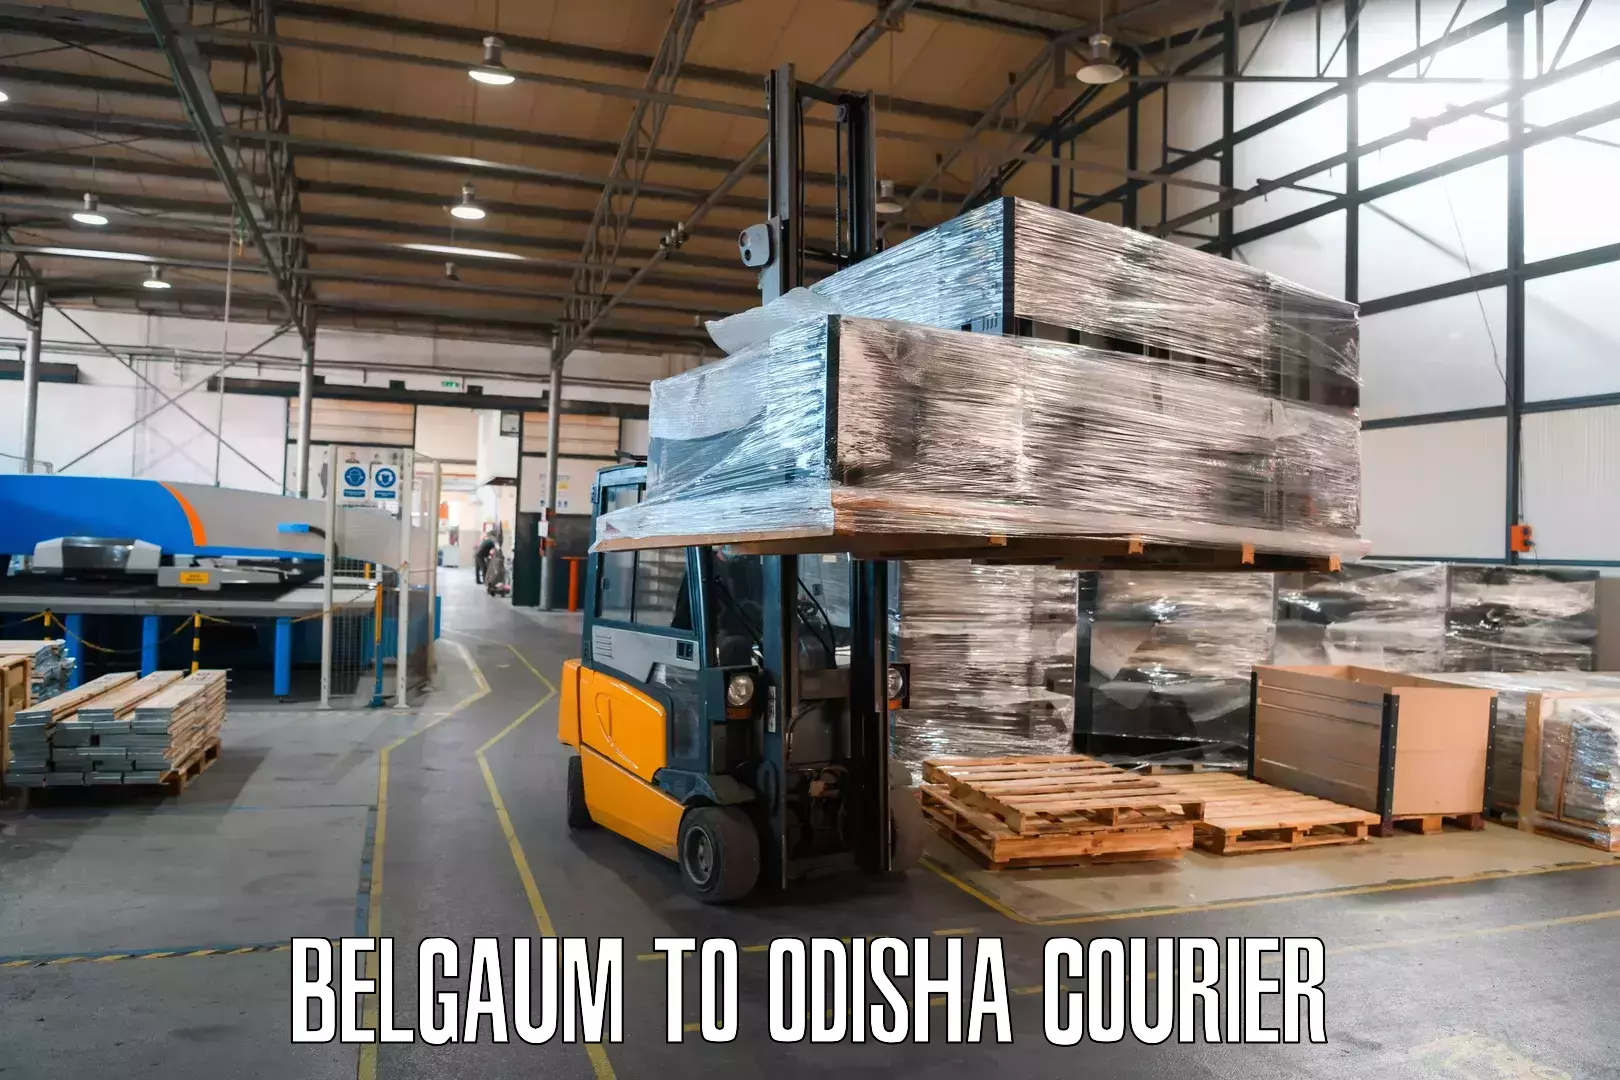 Reliable courier service Belgaum to Chandikhol